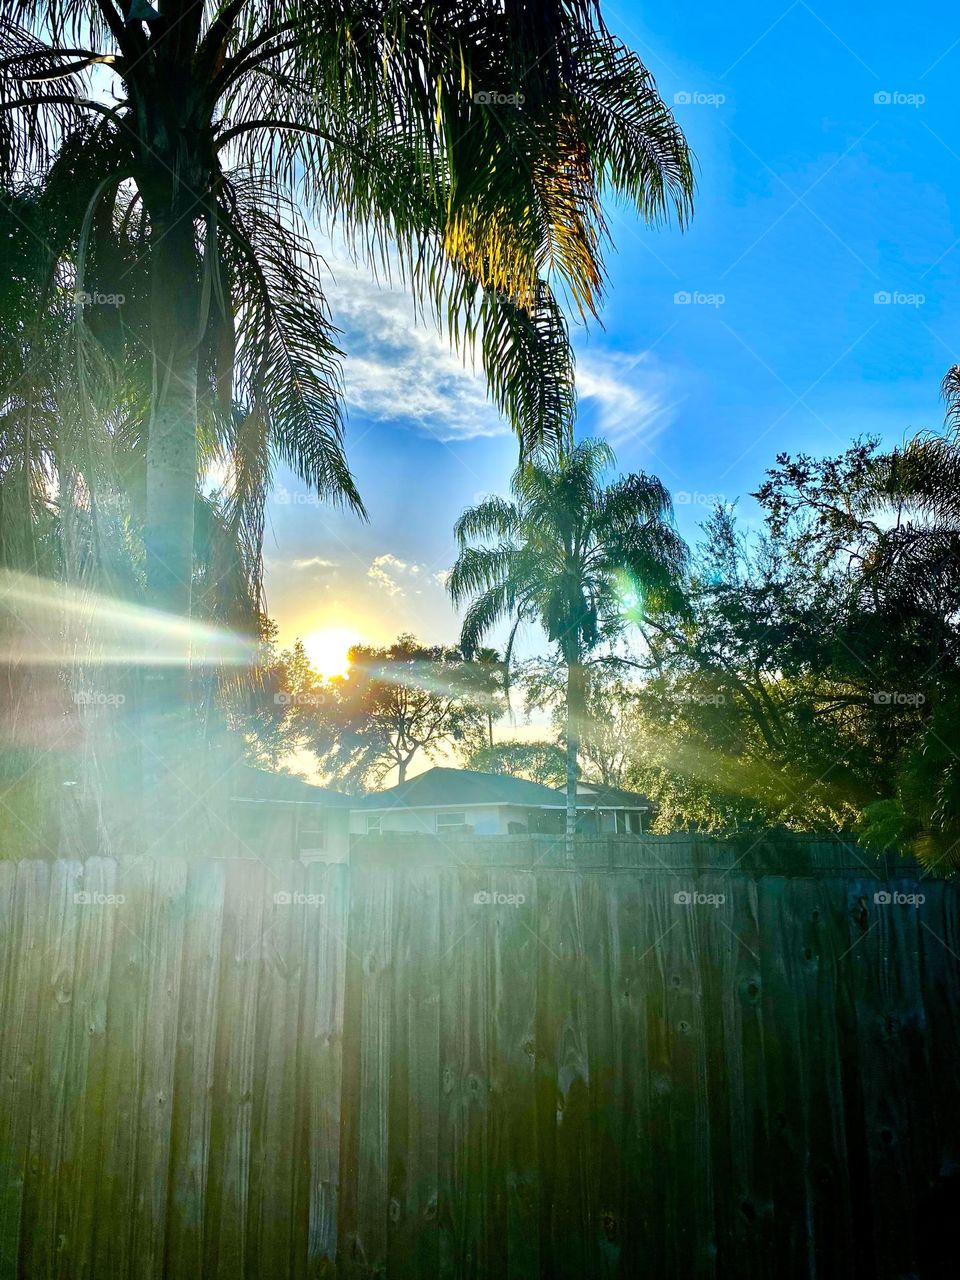 Sun over fence